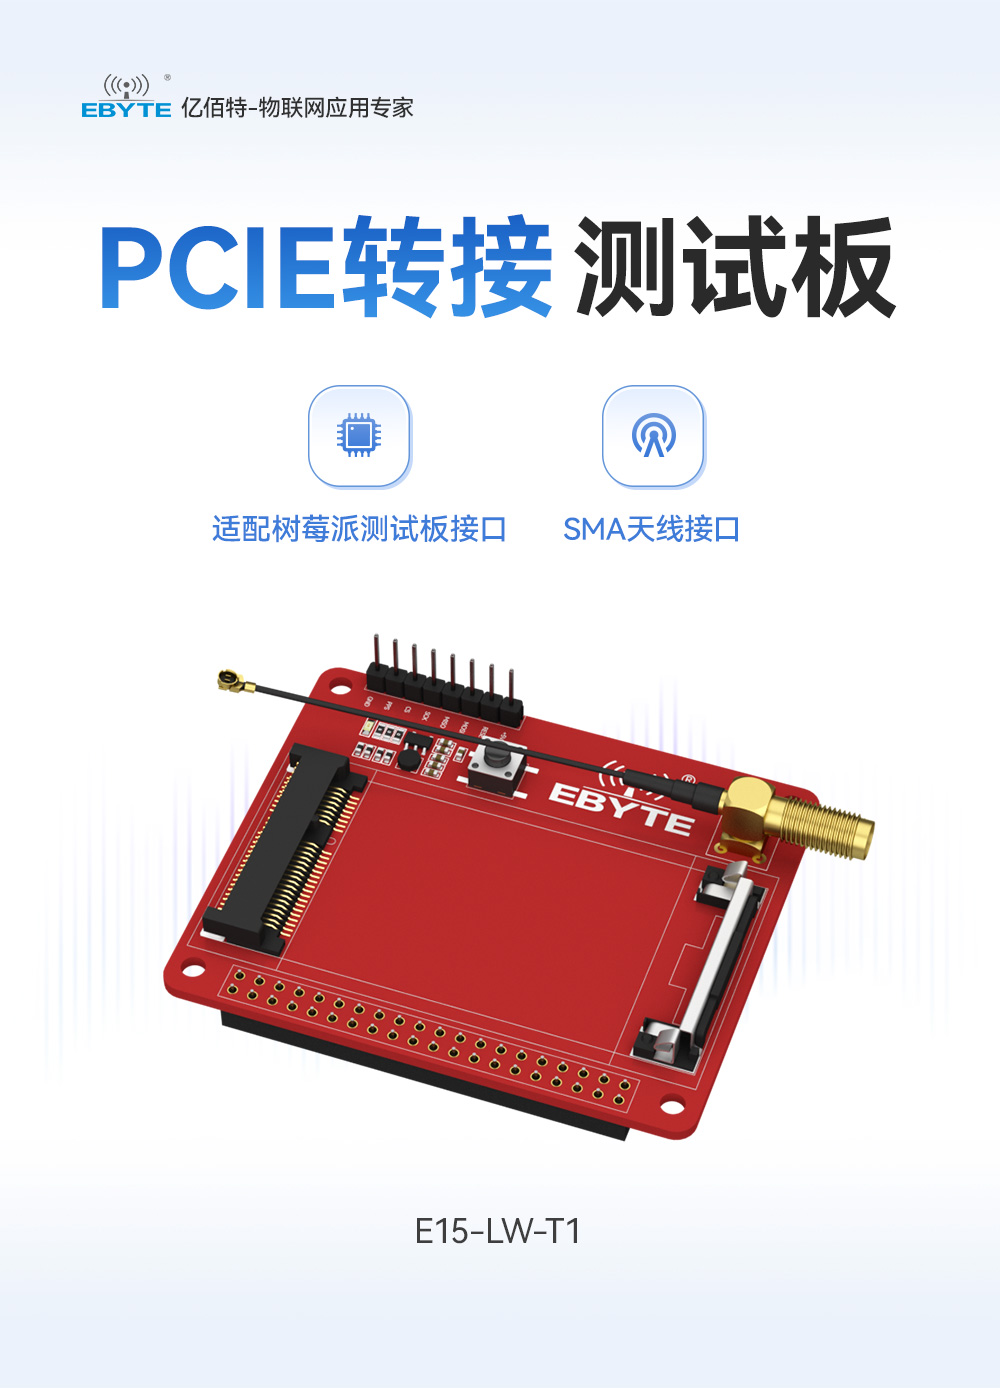 E15-LW-T1-PCIE转接测试版 (1)